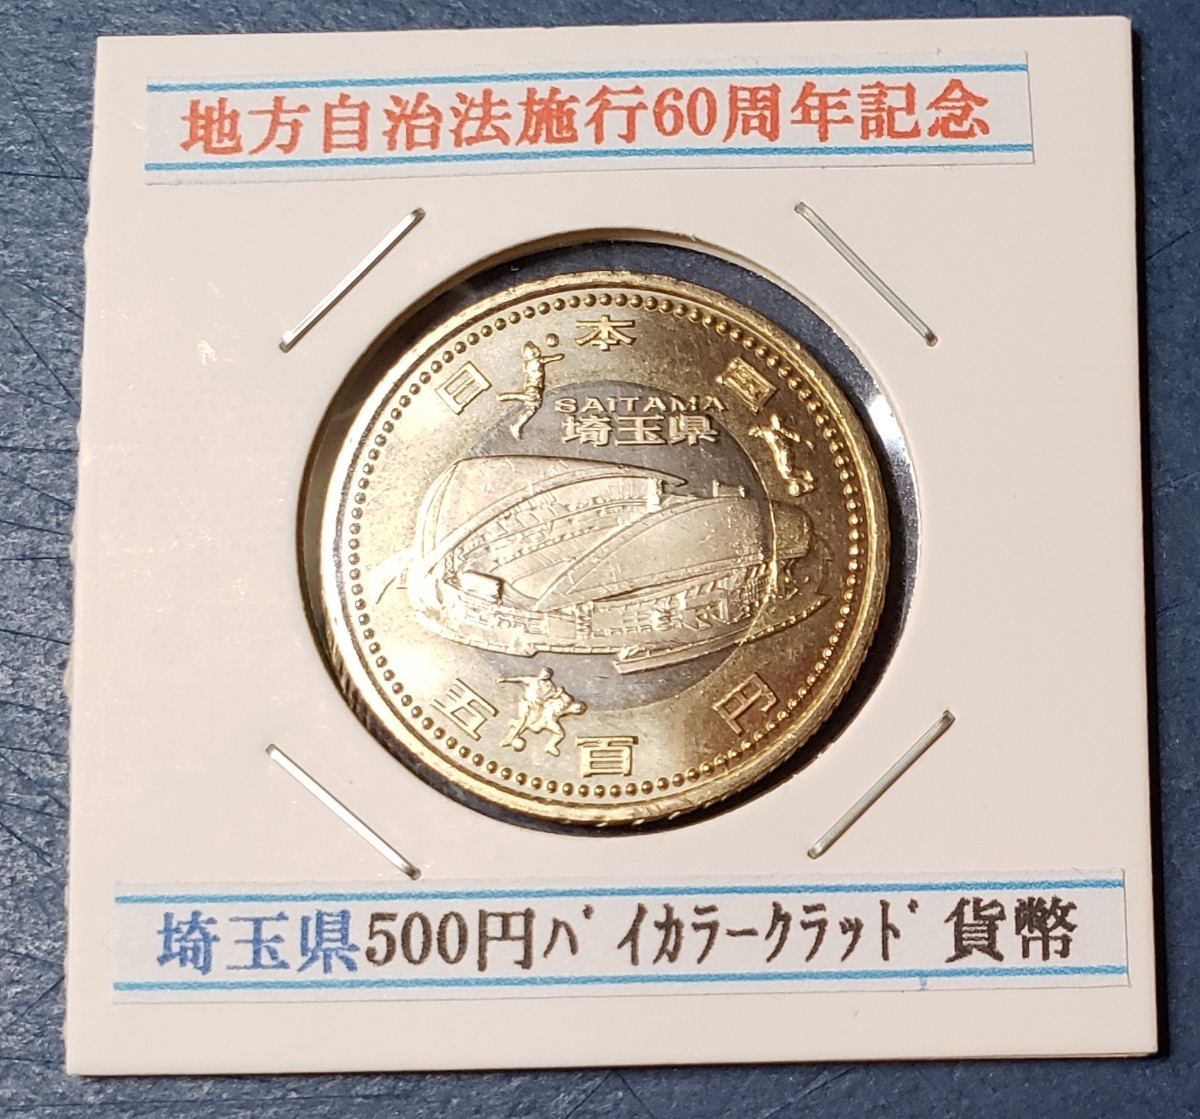 地方自治法施行60年記念 埼玉県       500円バイカラークラッド貨幣 控え記号:S20 の画像1